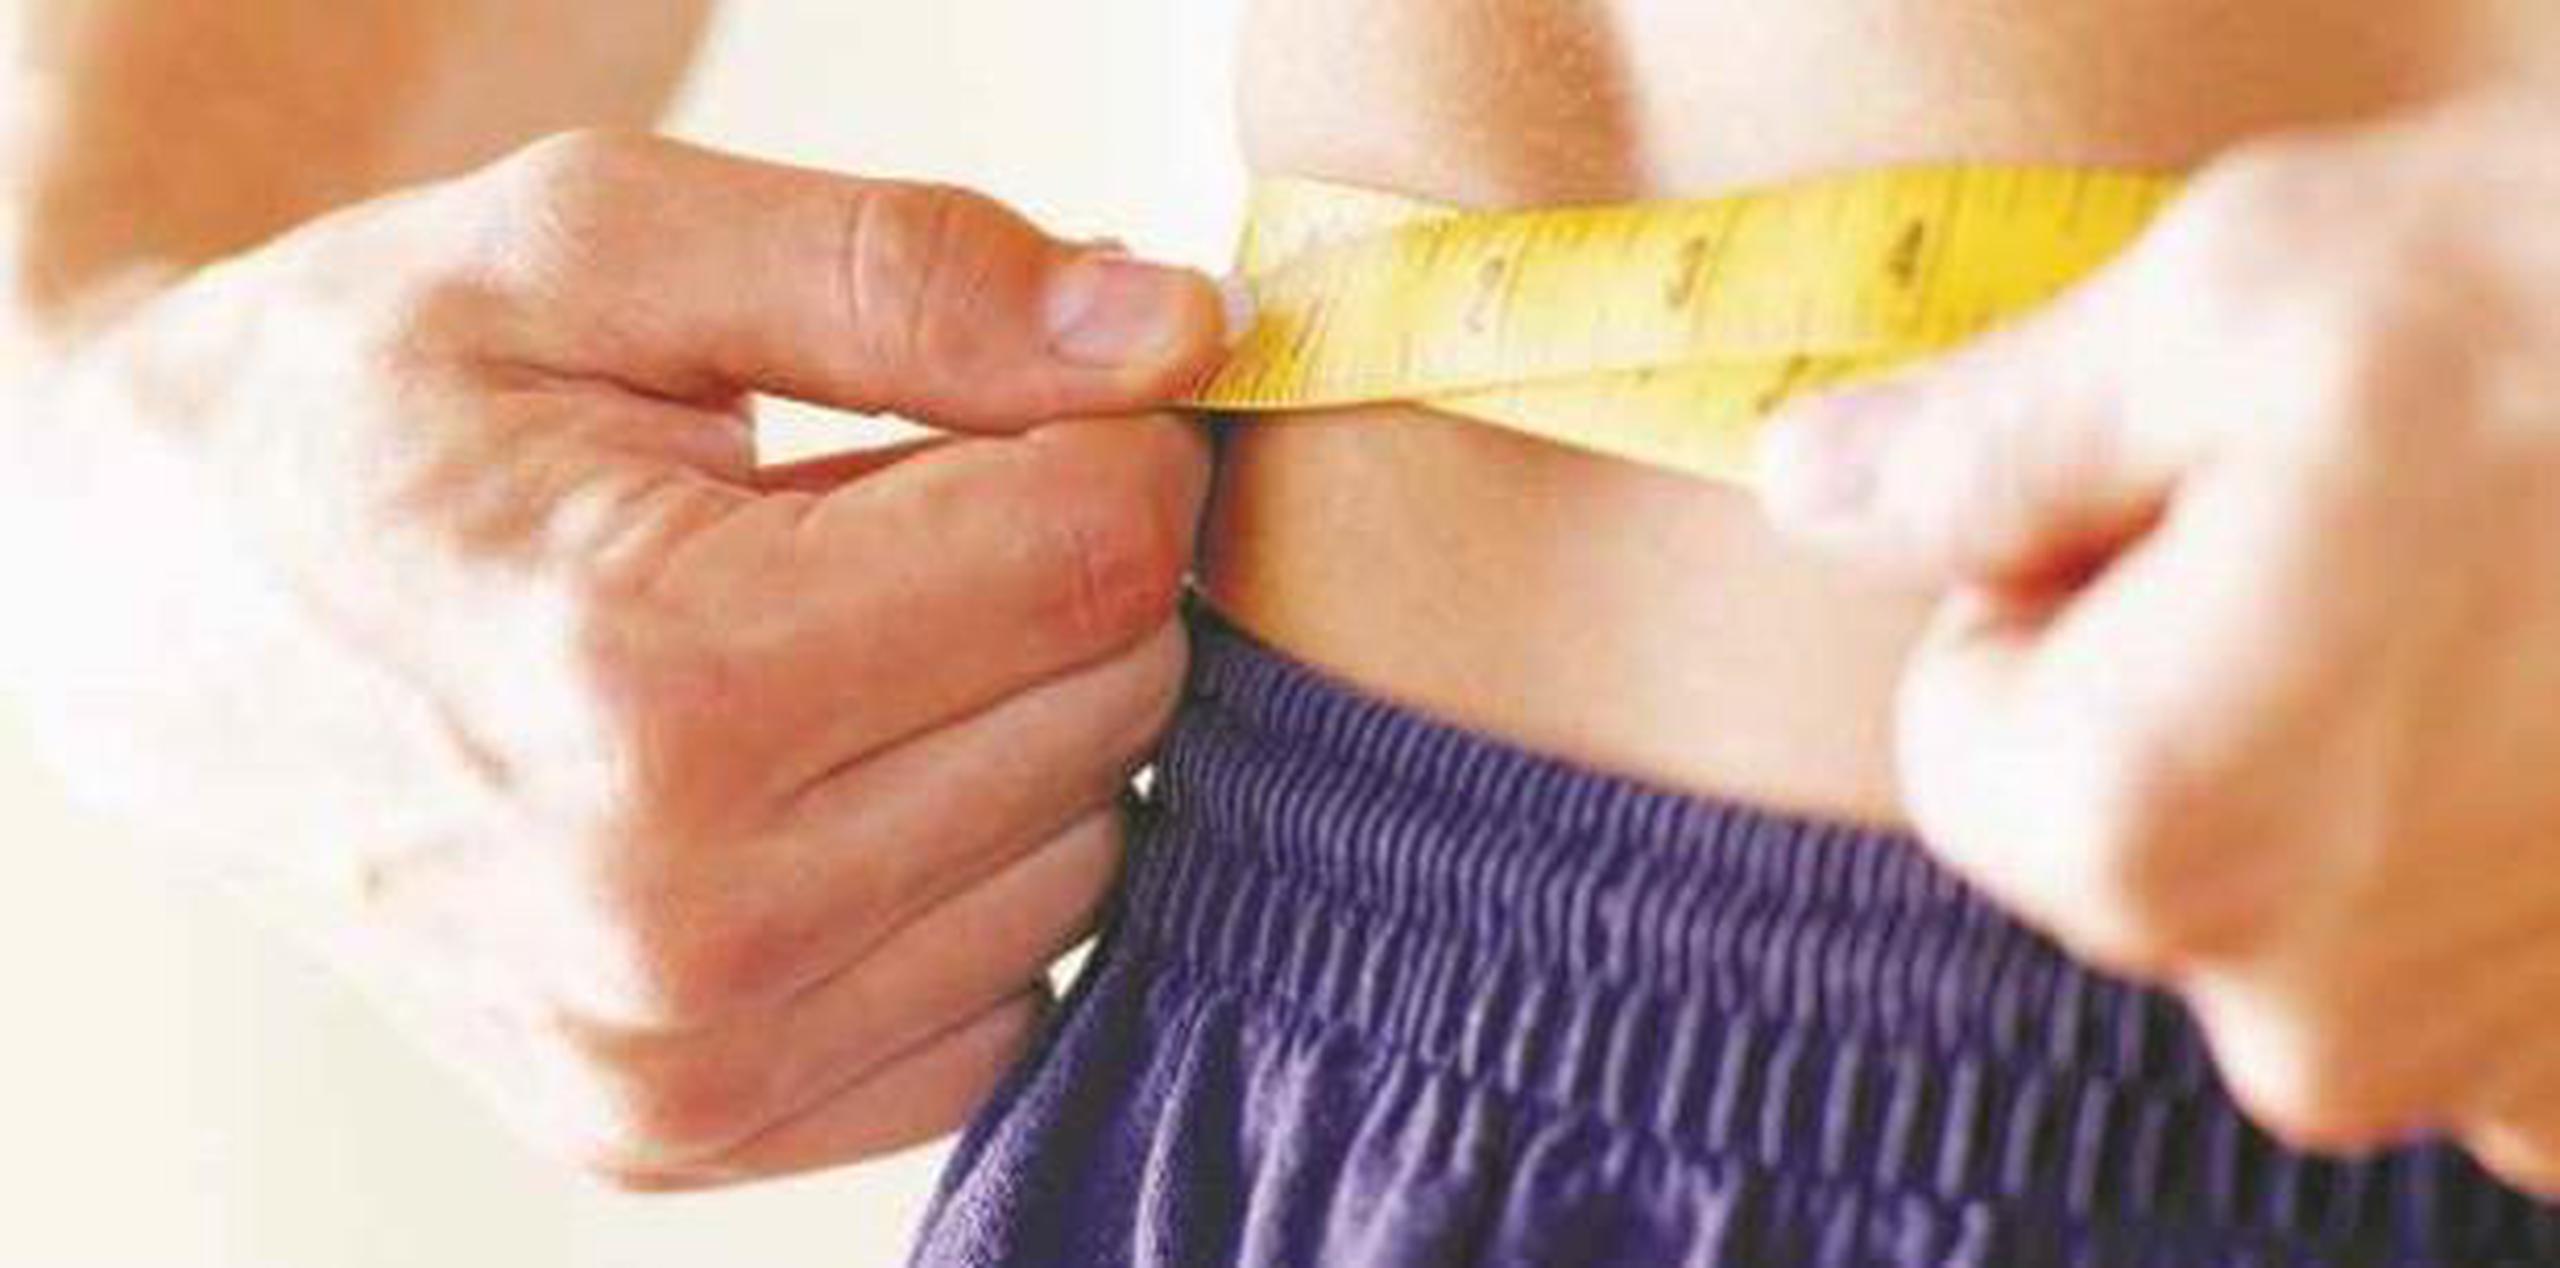 Los períodos de ayuno que reducen el apetito son una mejor estrategia que la disminución de calorías para bajar de peso. (Archivo)